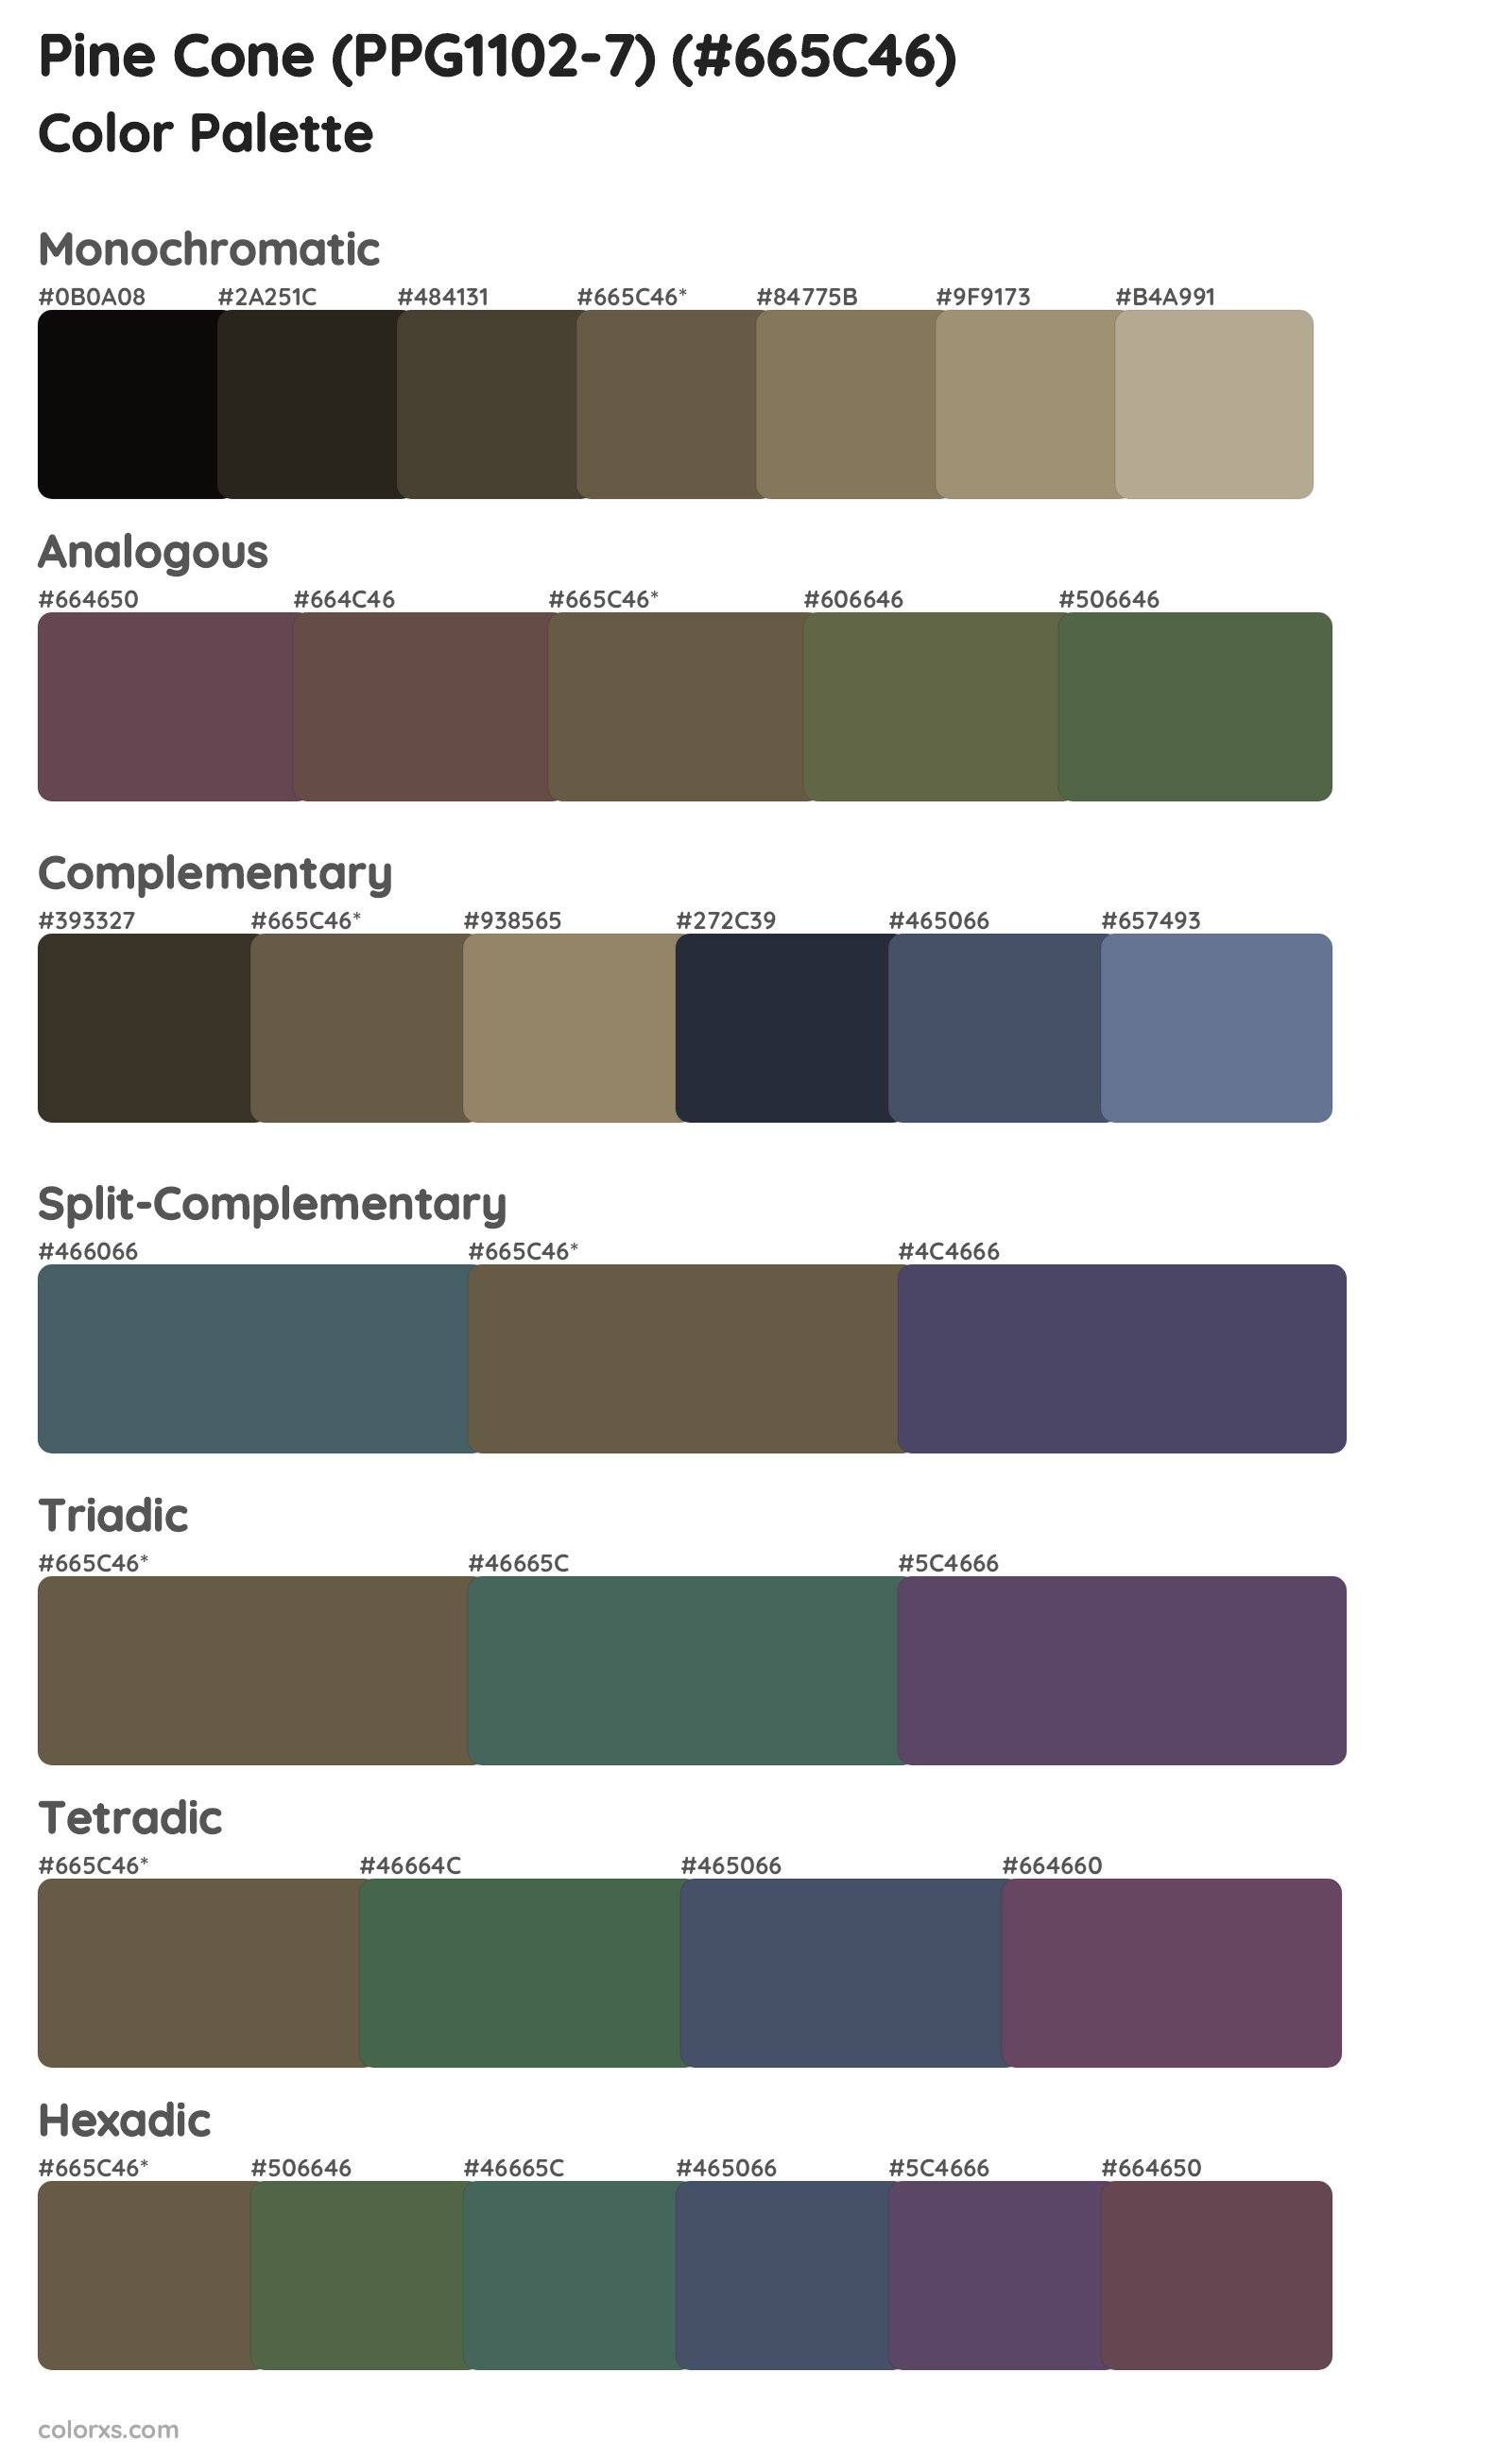 Pine Cone (PPG1102-7) Color Scheme Palettes